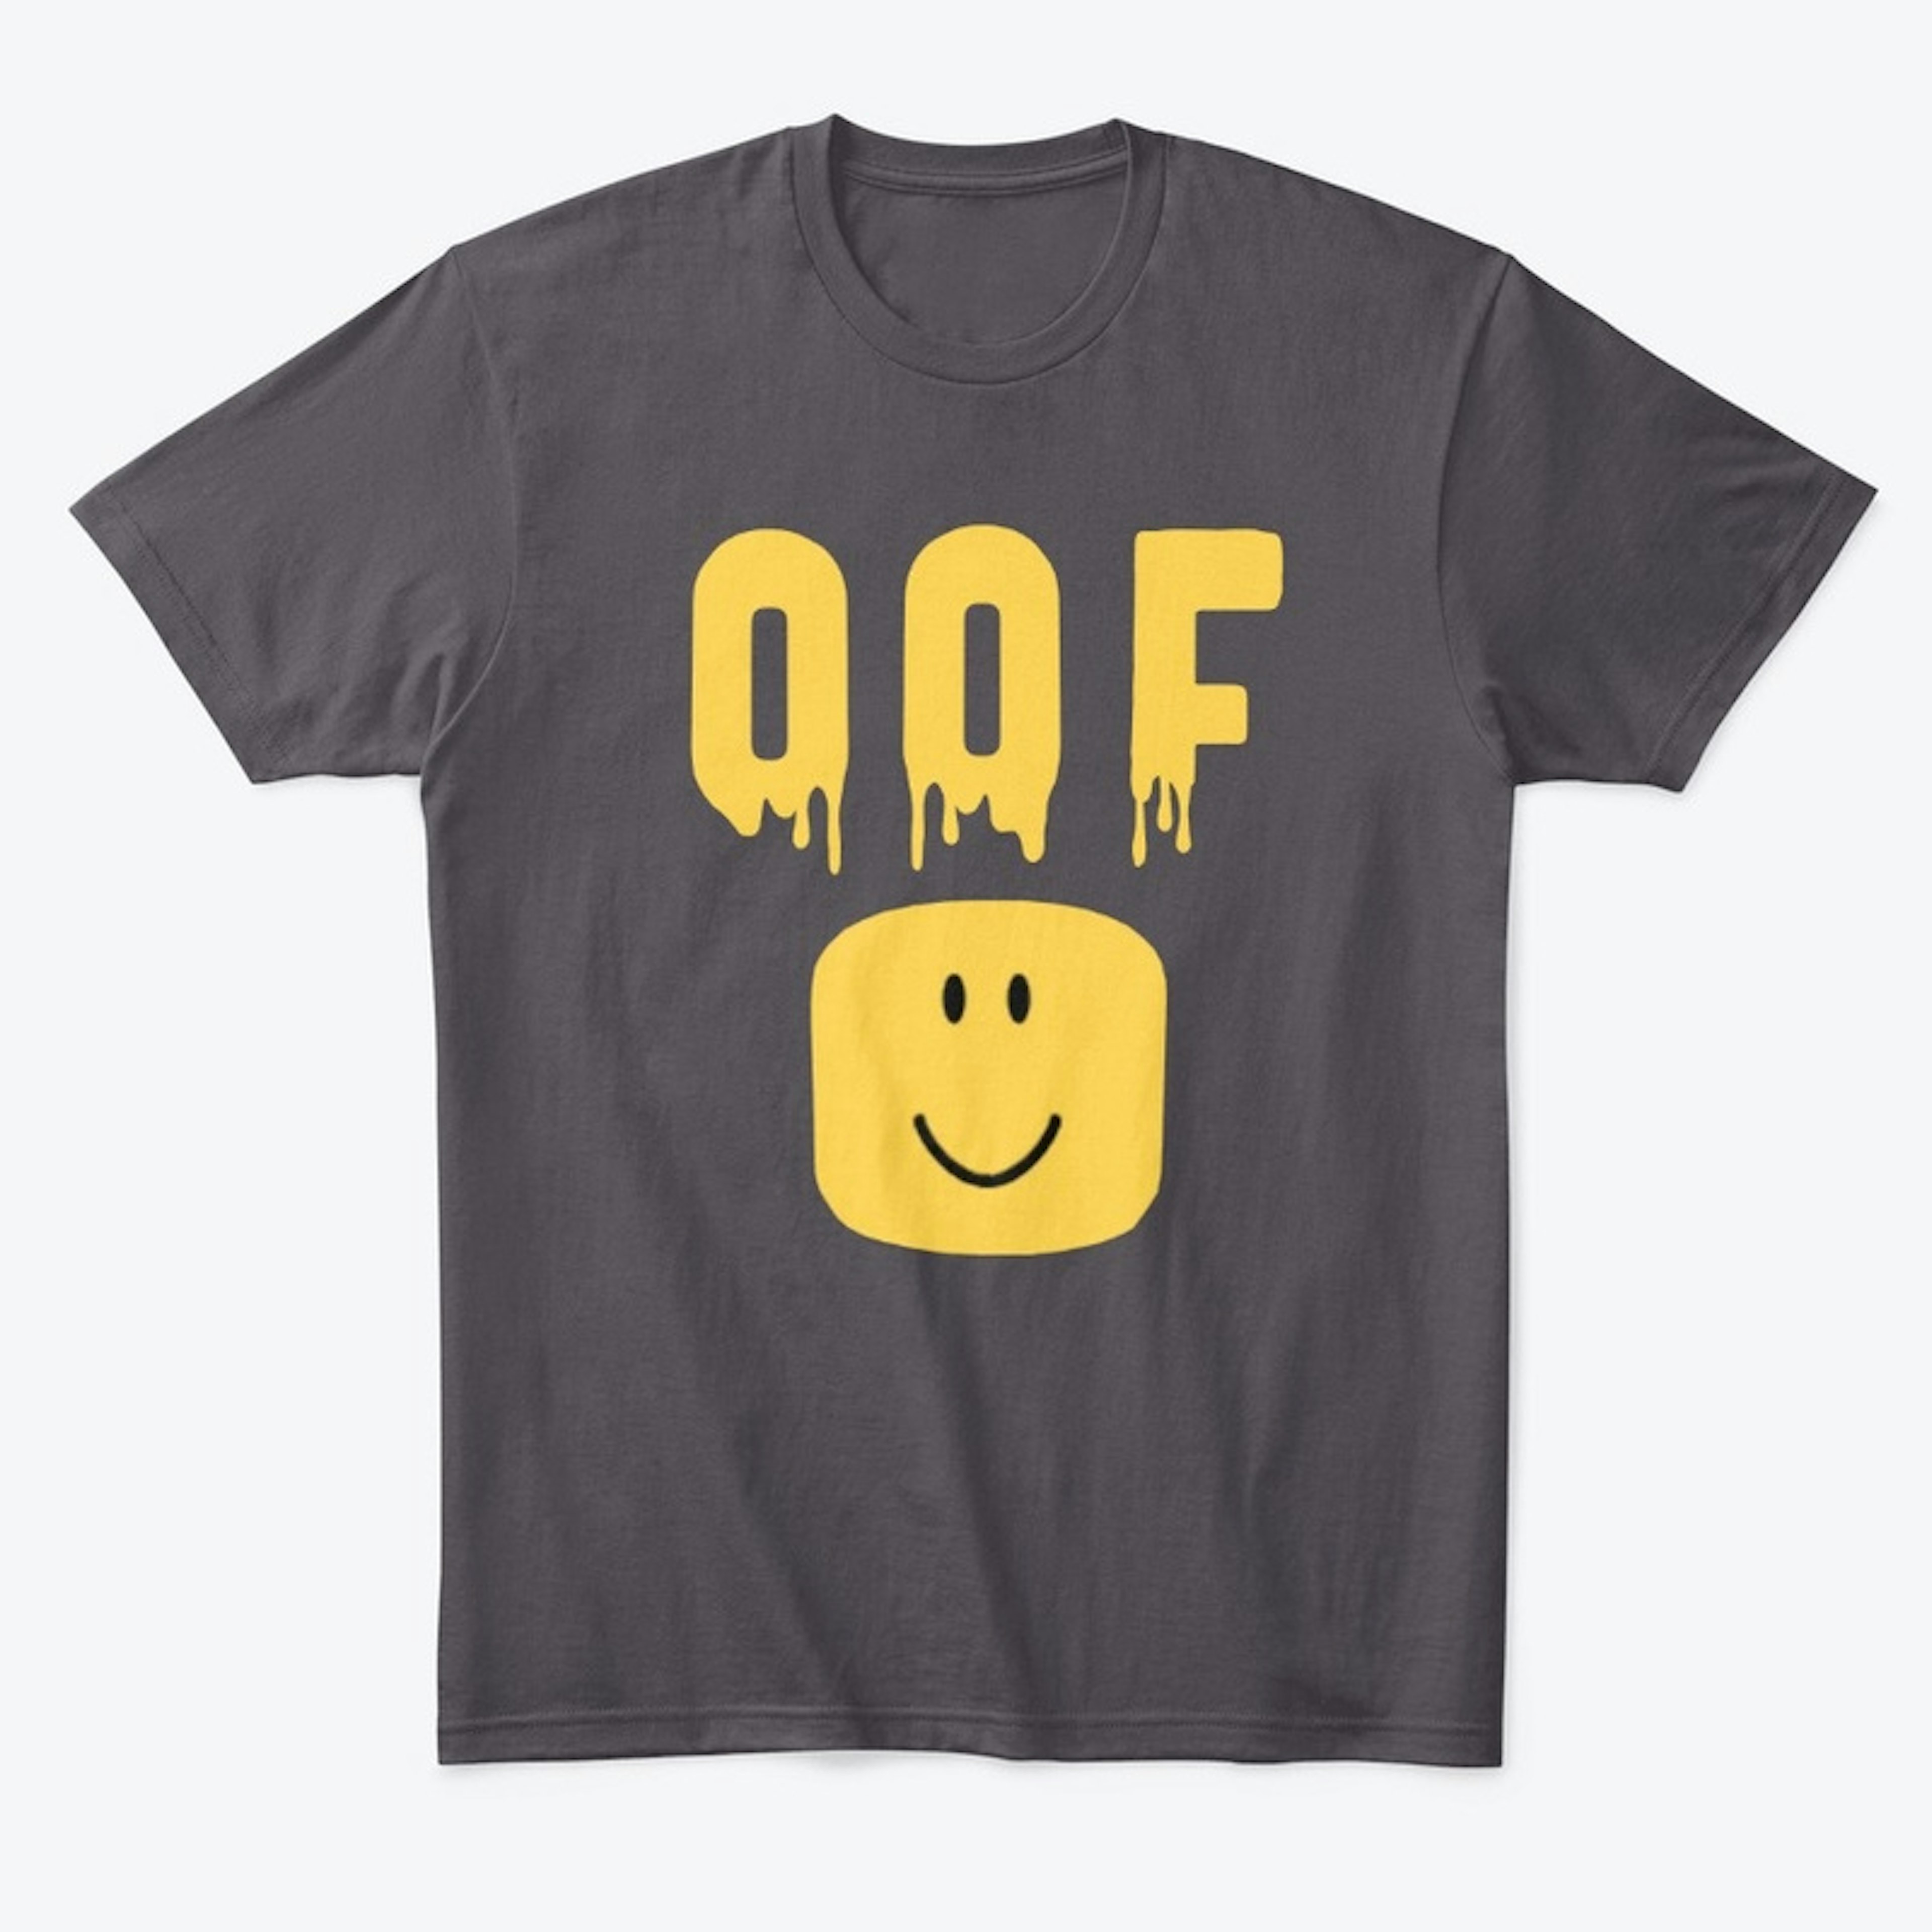 OOF Shirt